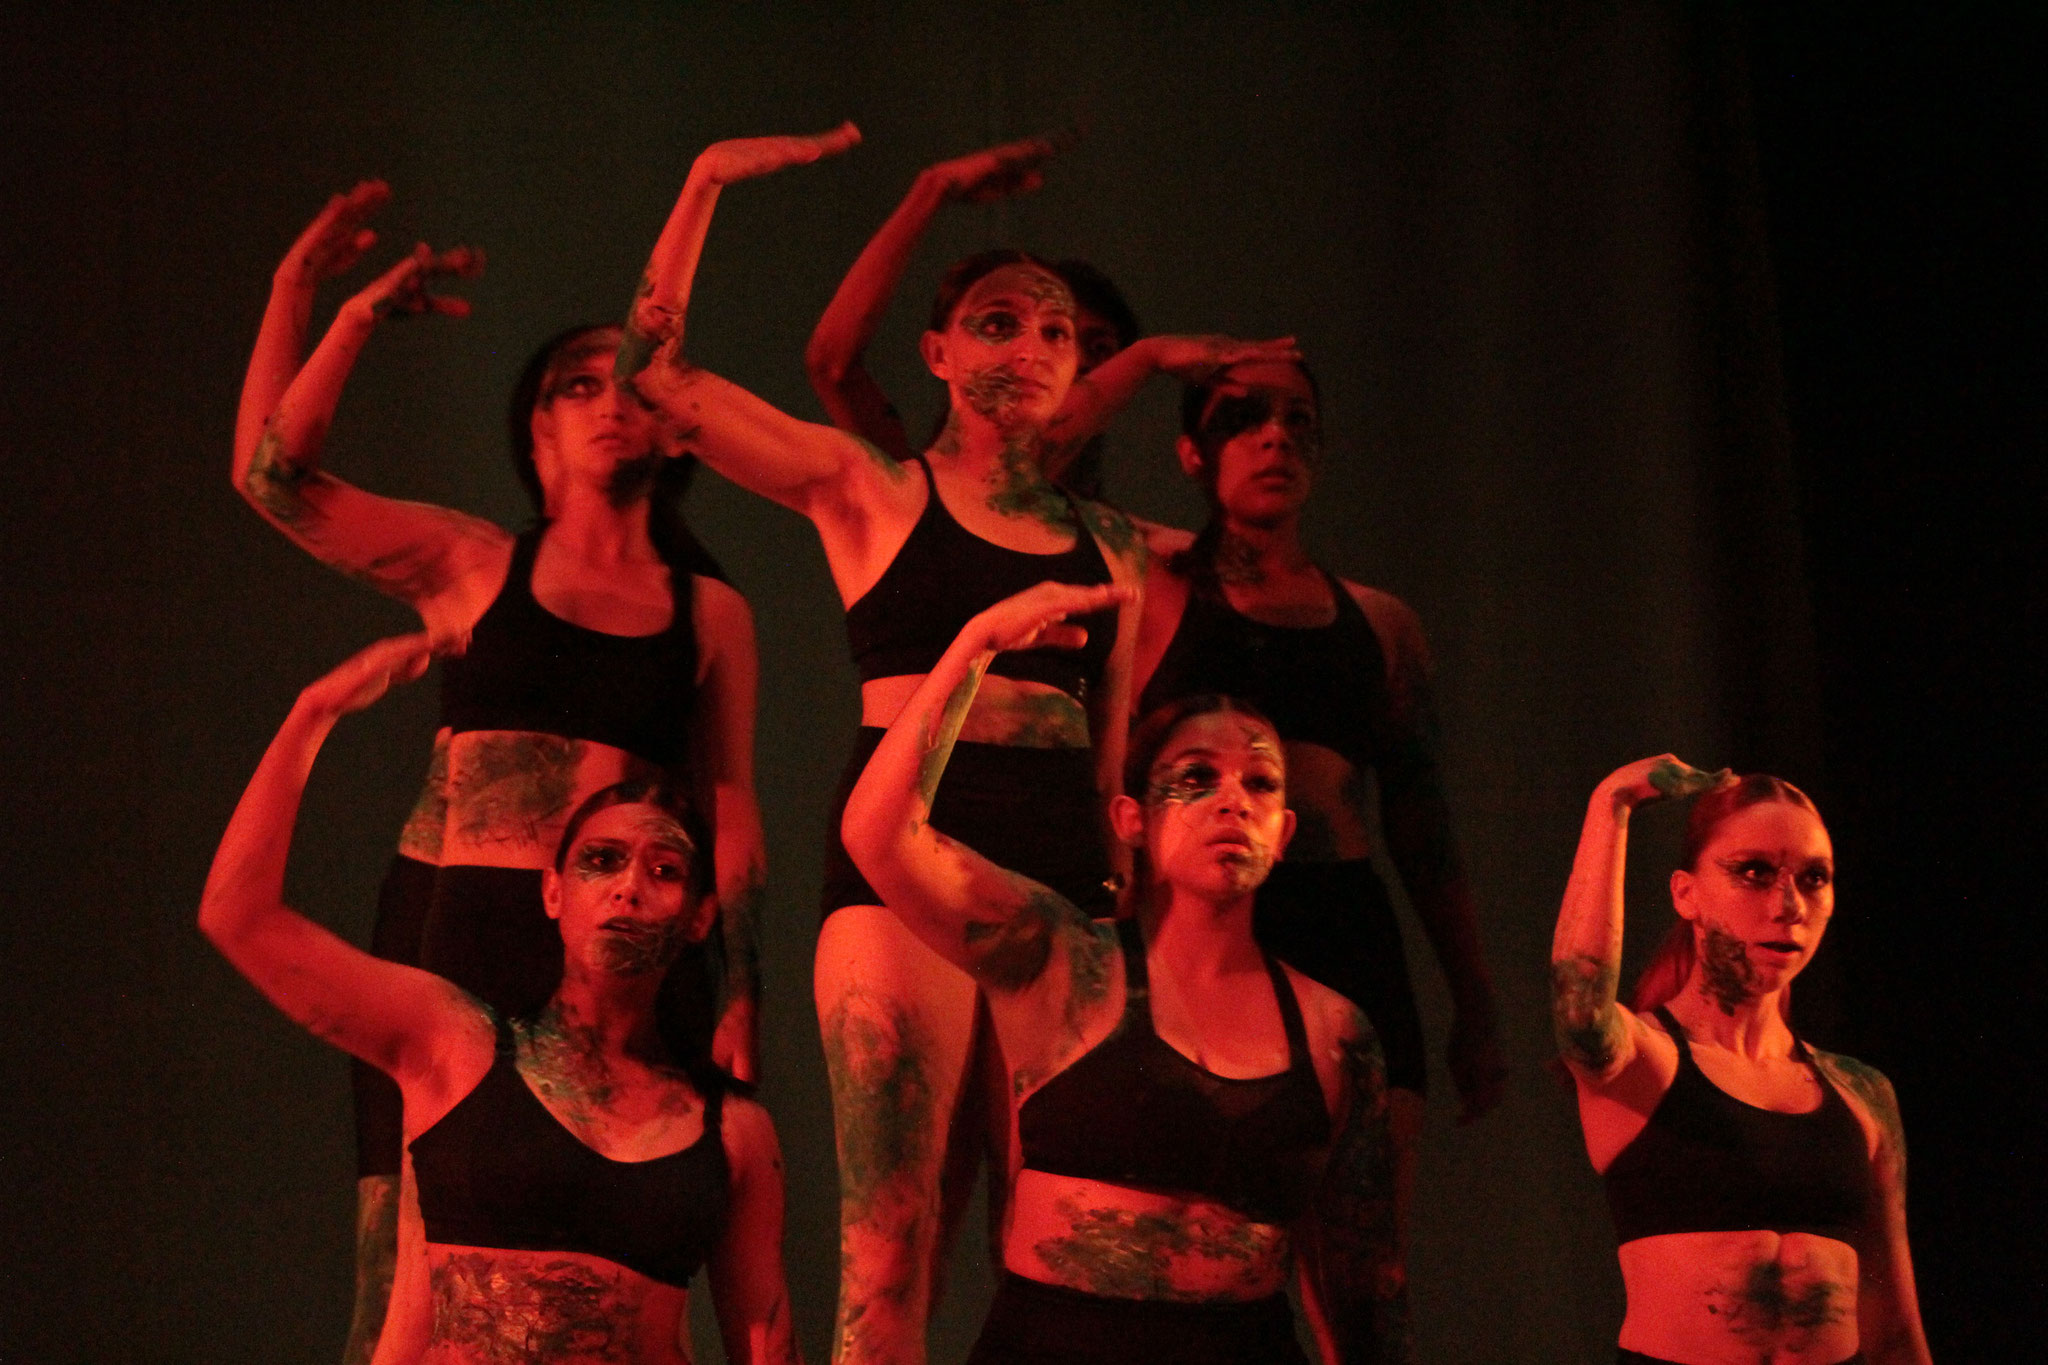 Presentación de danza "Ecos de movimiento". Estudiantes de Bachillerato en Artes y Humanidades y Profesional Medio en Danza